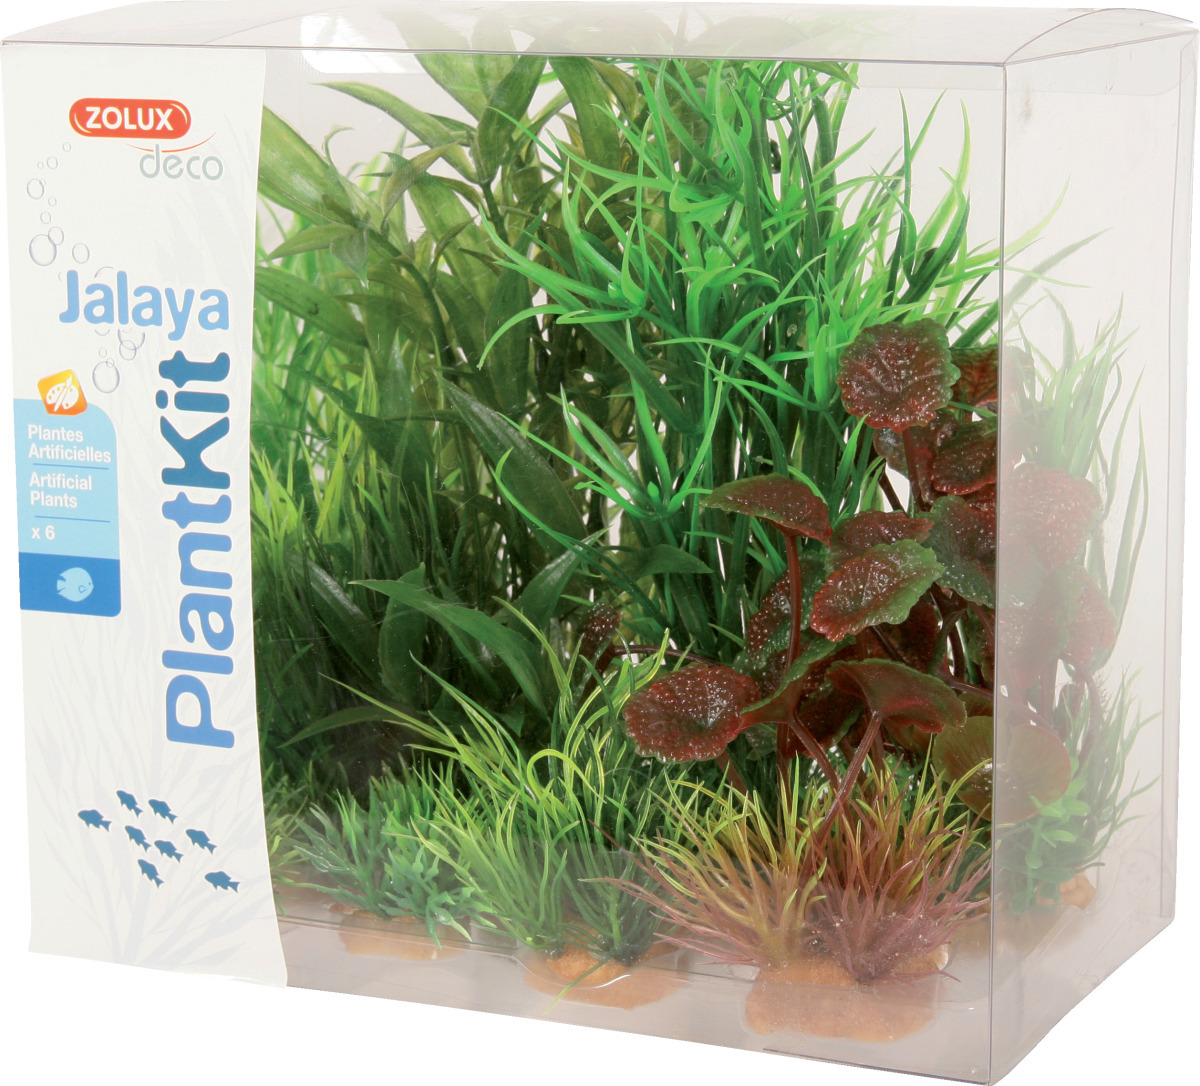 ZOLUX PlantKit Jalaya 2 - Lot de plantes artificielles pour aquarium